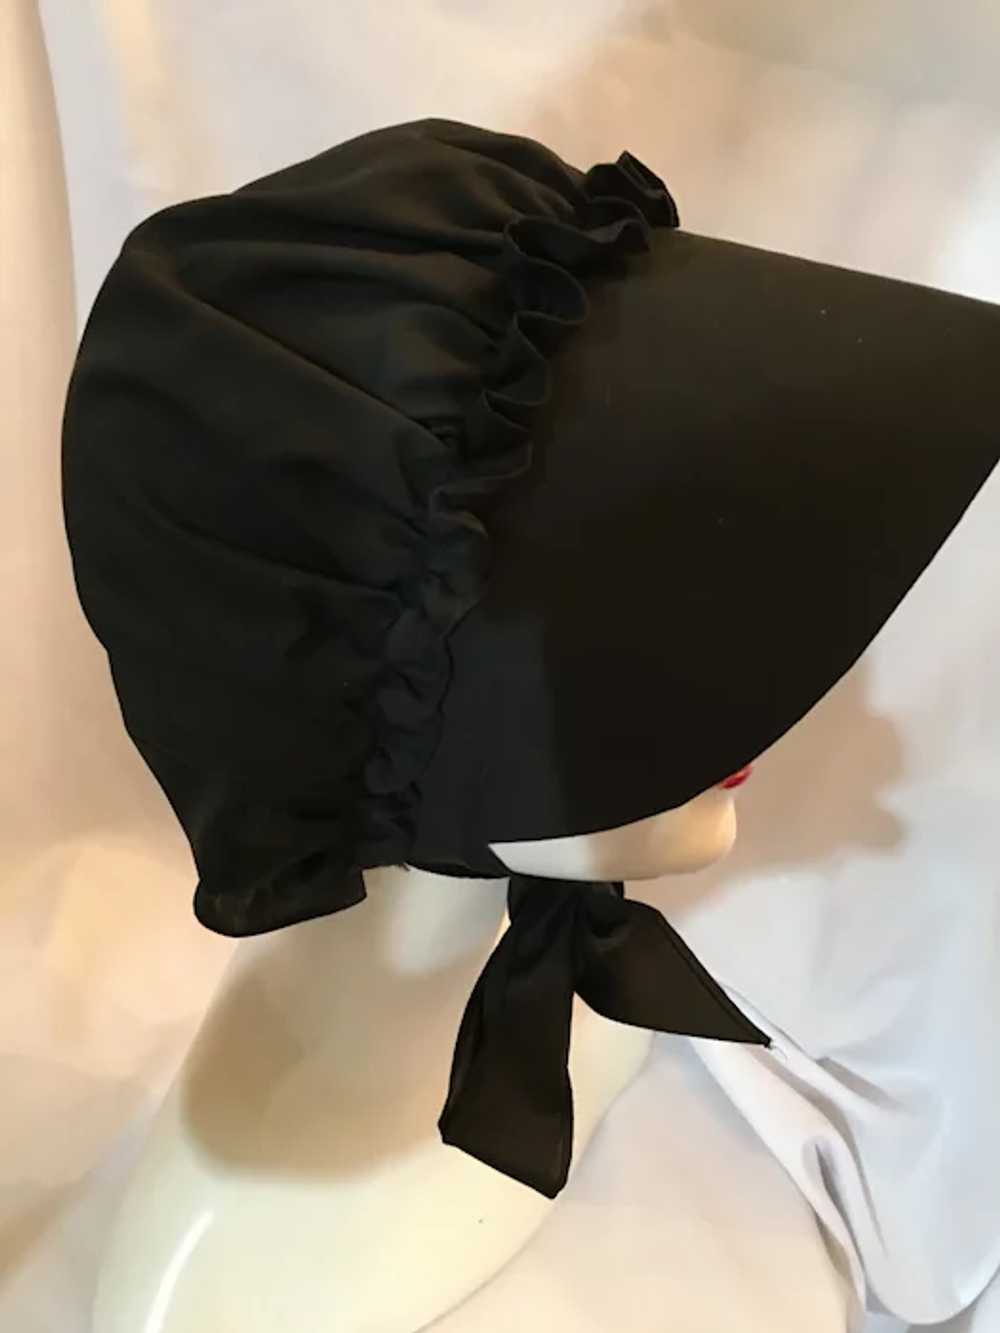 Stitched Cotton Ladies Amish Black Bonnet - image 5